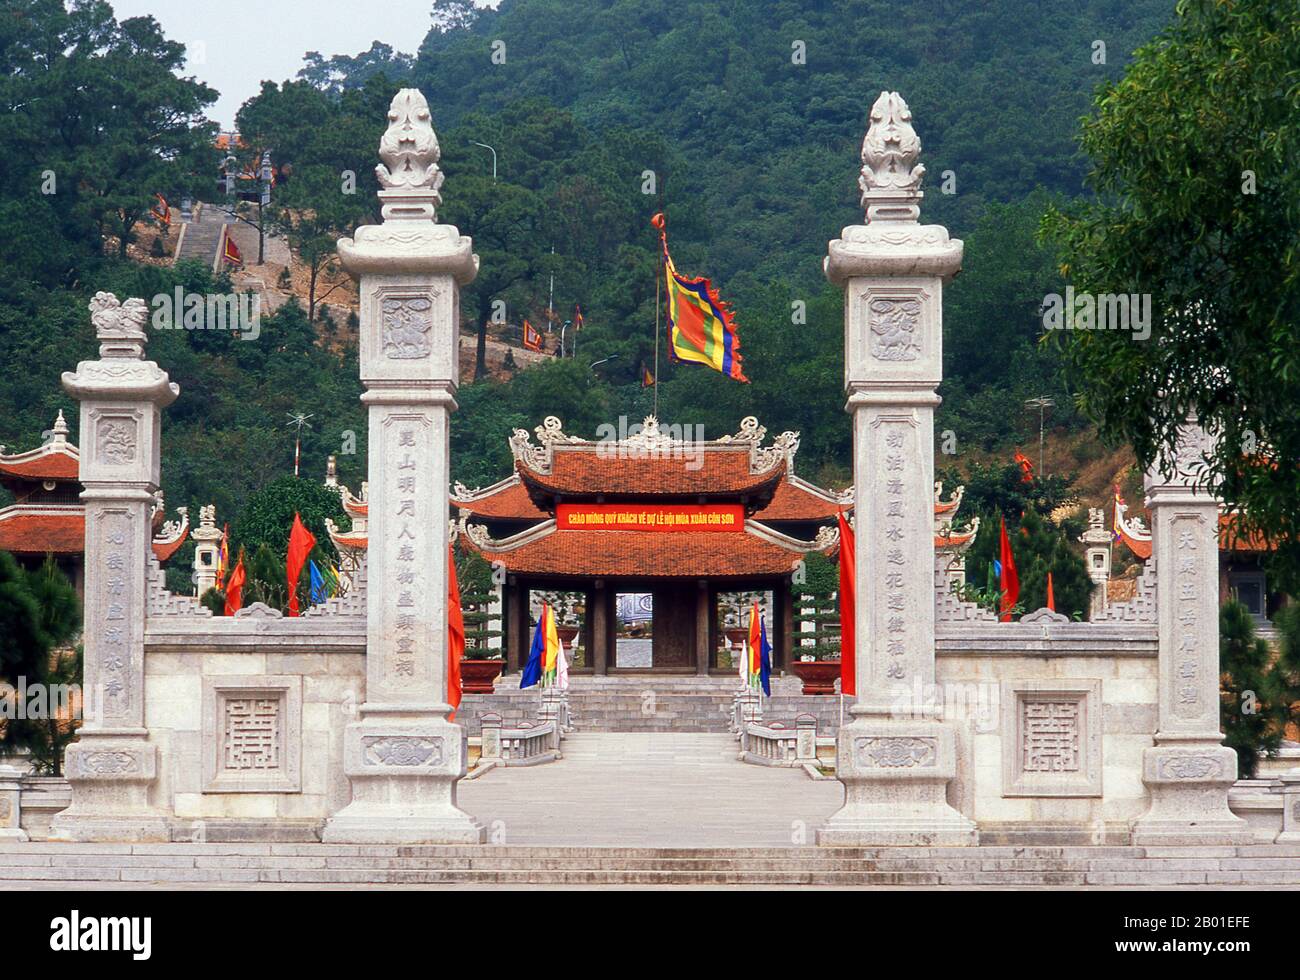 Vietnam: Con Son Pagoda, östlich von Hanoi. Chua Con Son war ein Tempel, der zu Ehren des Dichterkriegers Nguyen Trai (1380-1442), Chefberater und Amanuensis für Le Loi, dem General, der die Ming-Chinesen 1427 aus Vietnam vertrieben und 1428 den Thron als Kaiser Le Thai To übernahm, errichtet wurde. Stockfoto